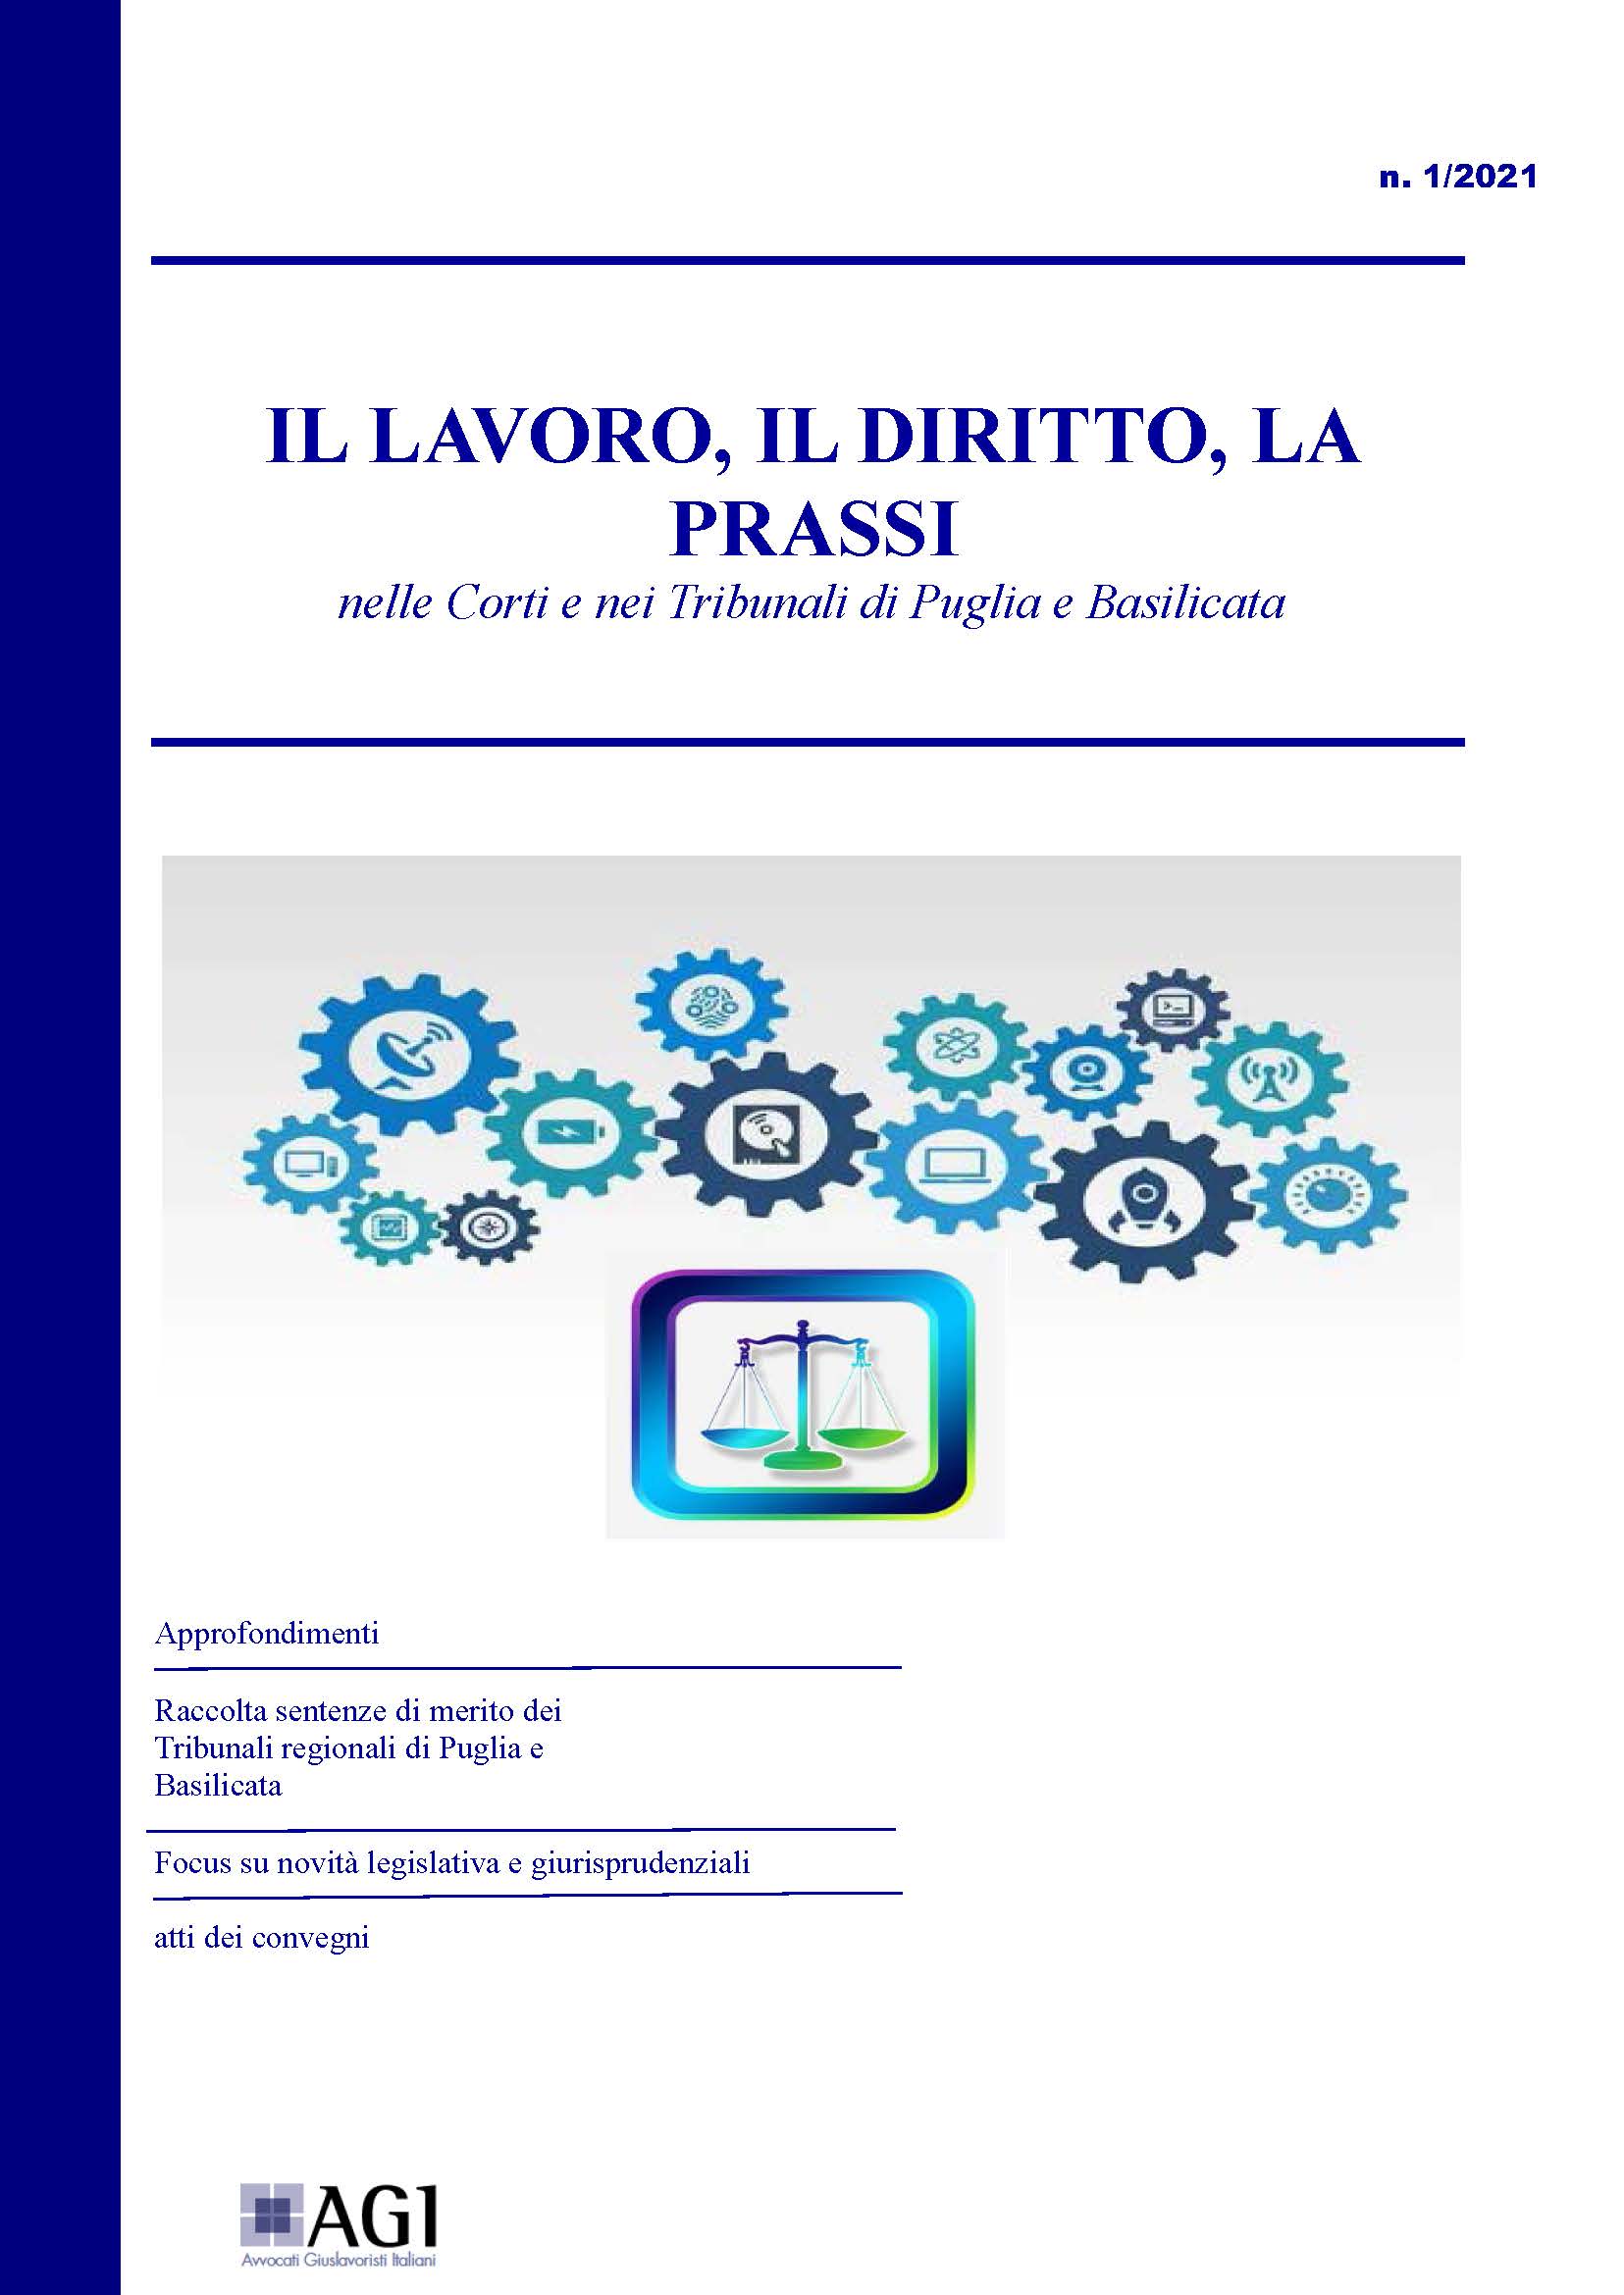 Il lavoro, il diritto, la prassi nelle Corti e nei Tribunali di Puglia e Basilicata